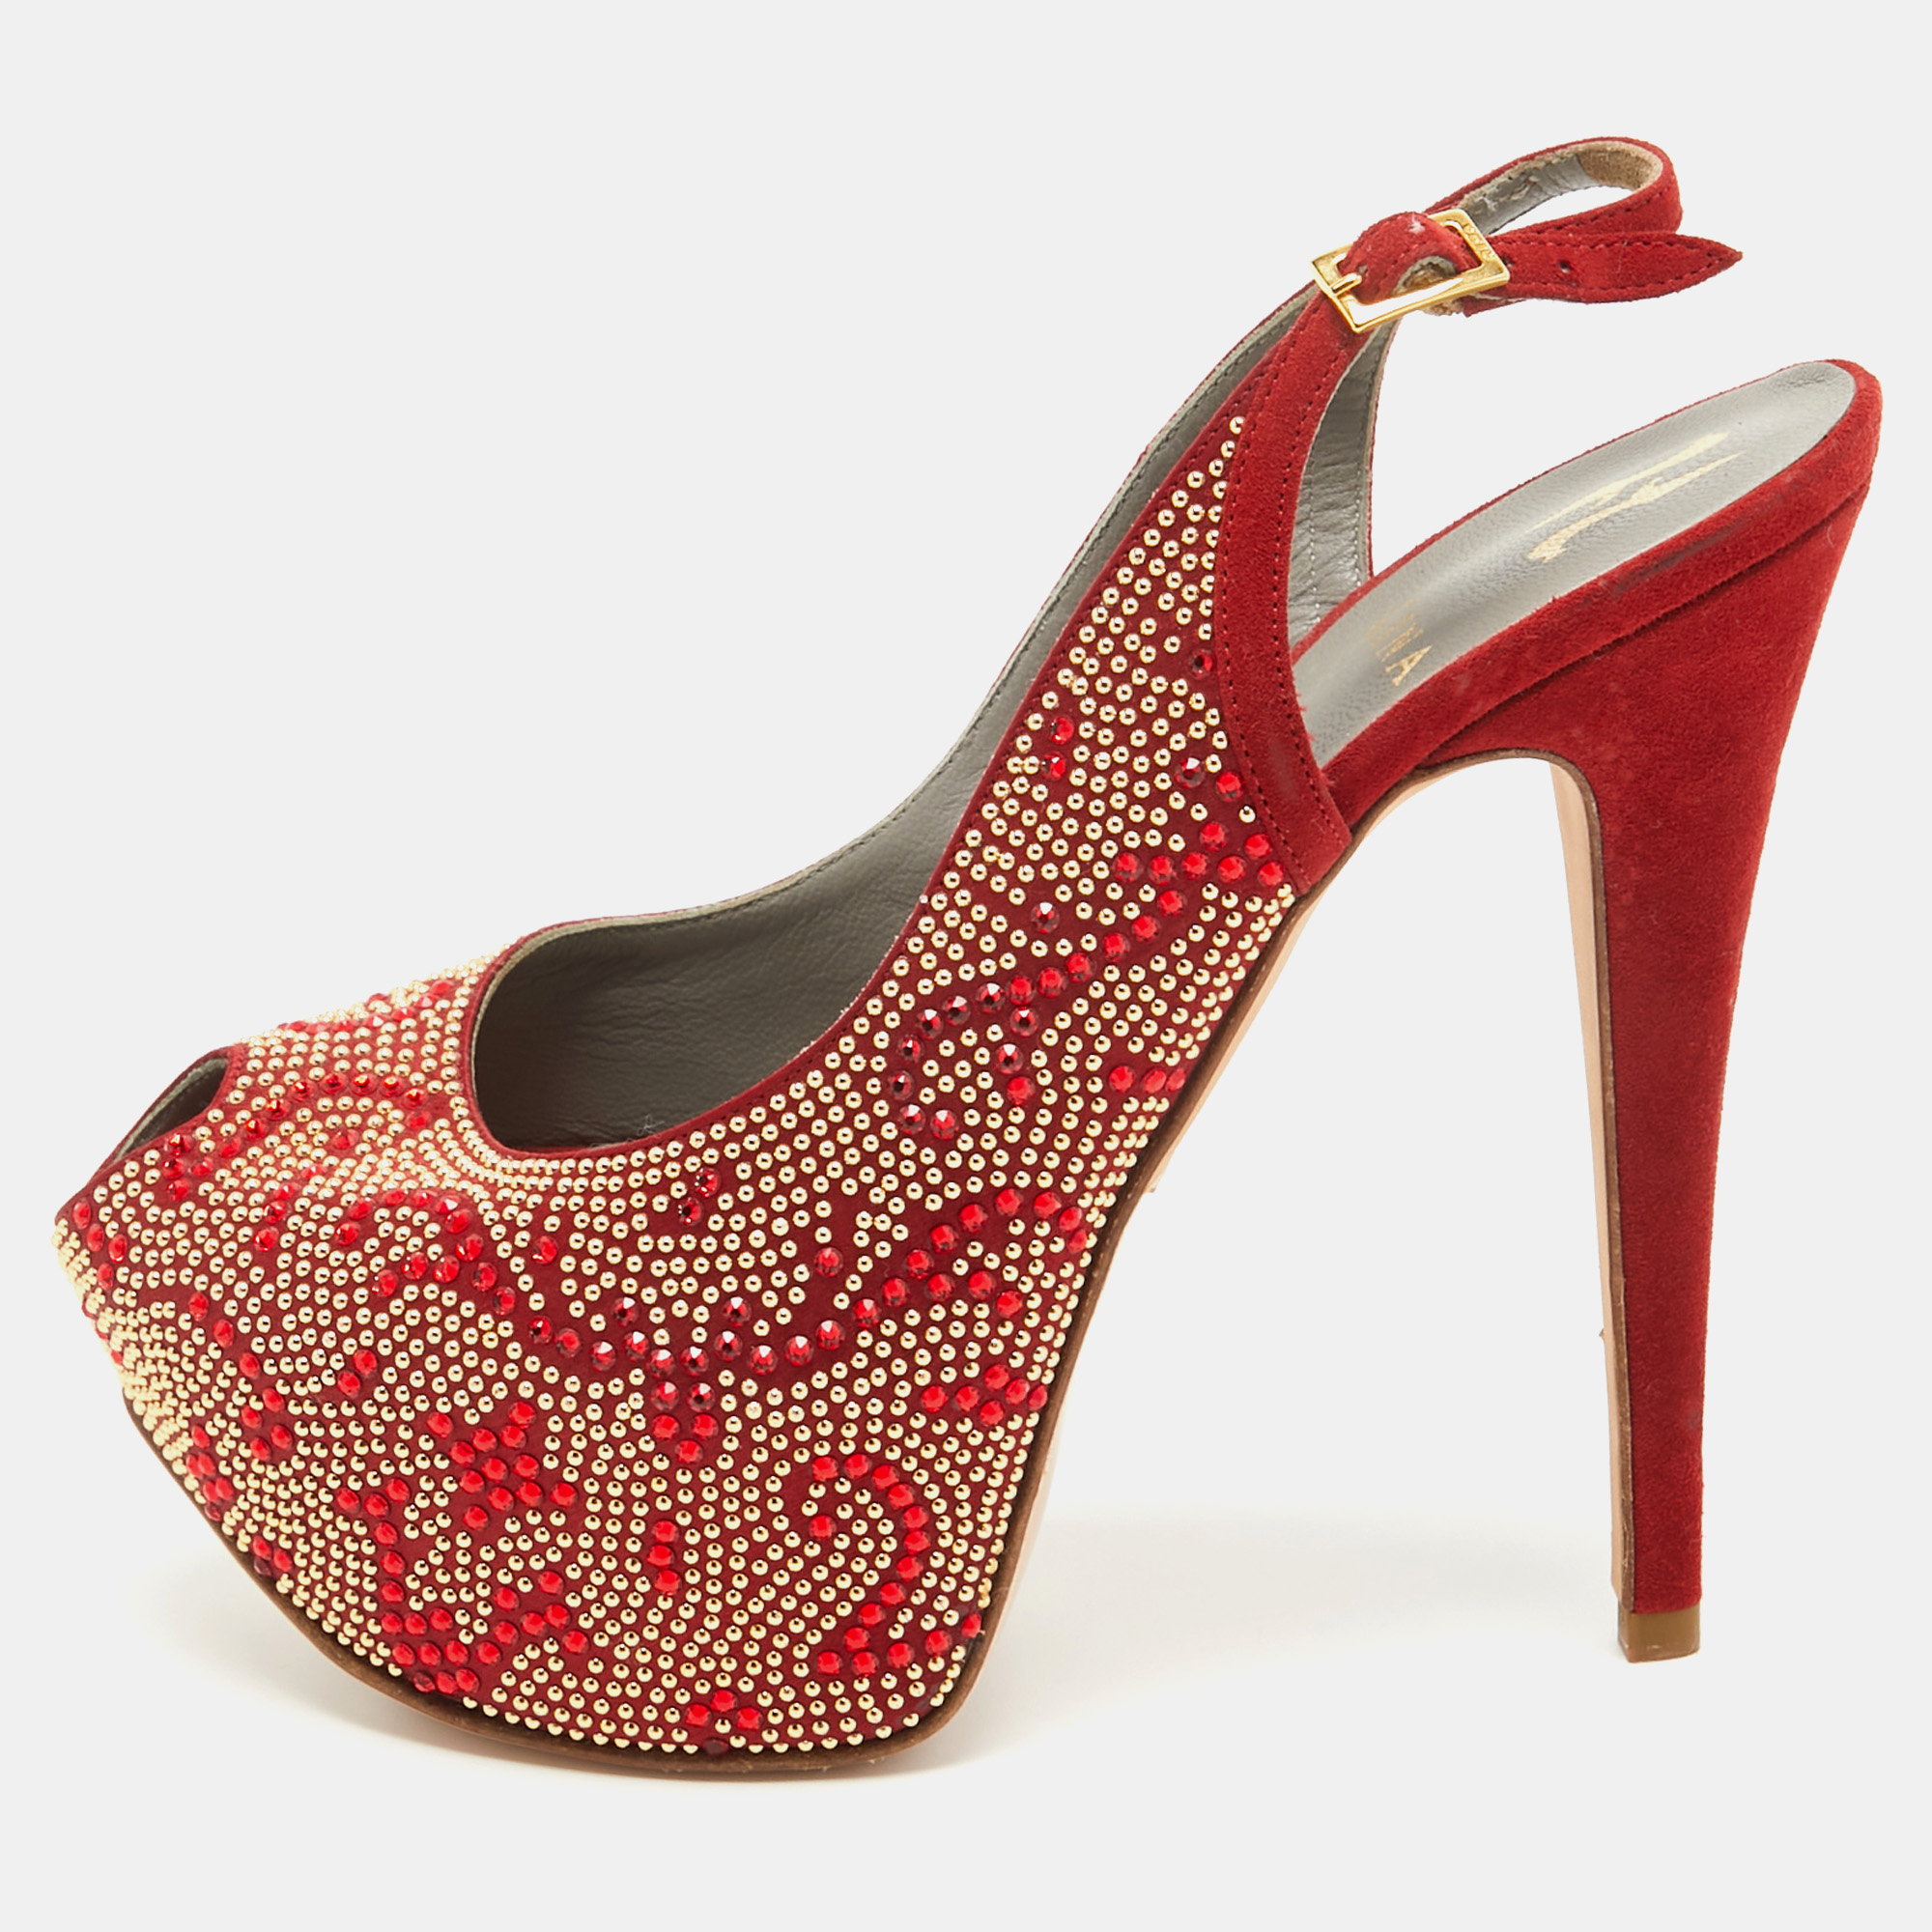 Gina red embellished satin peep toe platform slingback pumps size 39